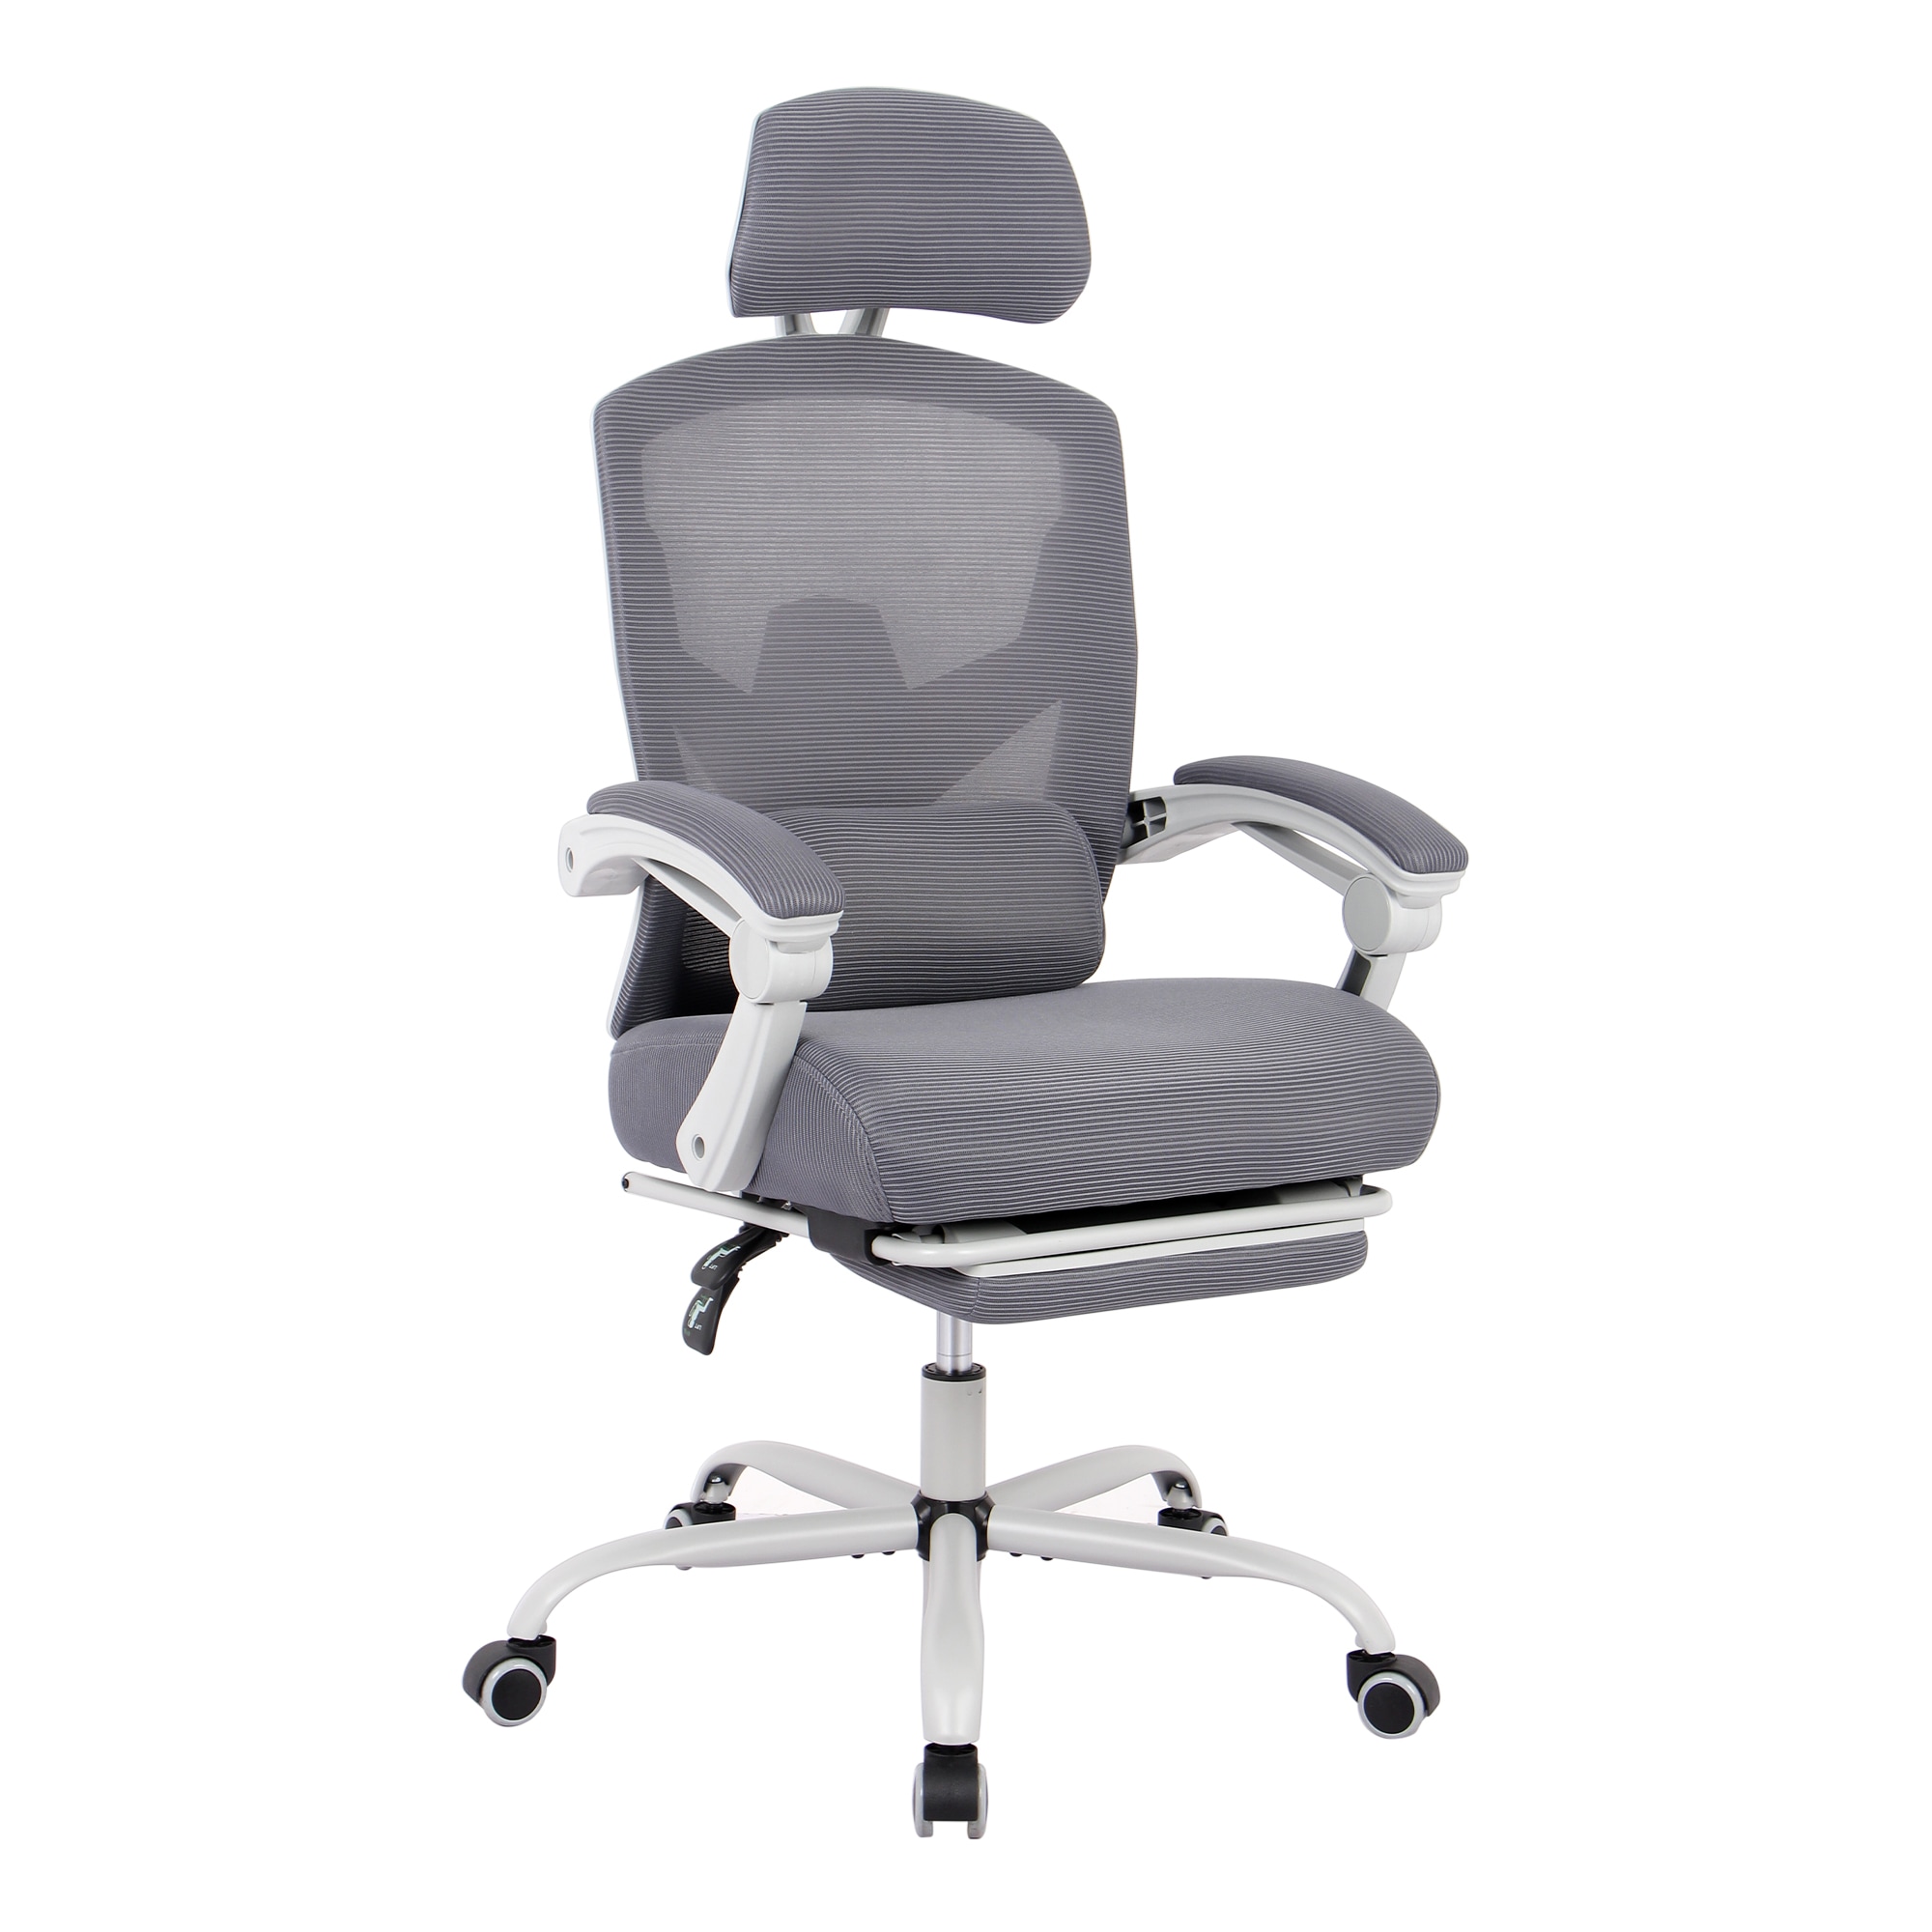 【お試し価格！】 【国内即日発送】事務所チェア リクライニング機能 足載せ付き ロッキング機能 メッシュタイプ オフィスチェア 椅子 Color:グレーBAA